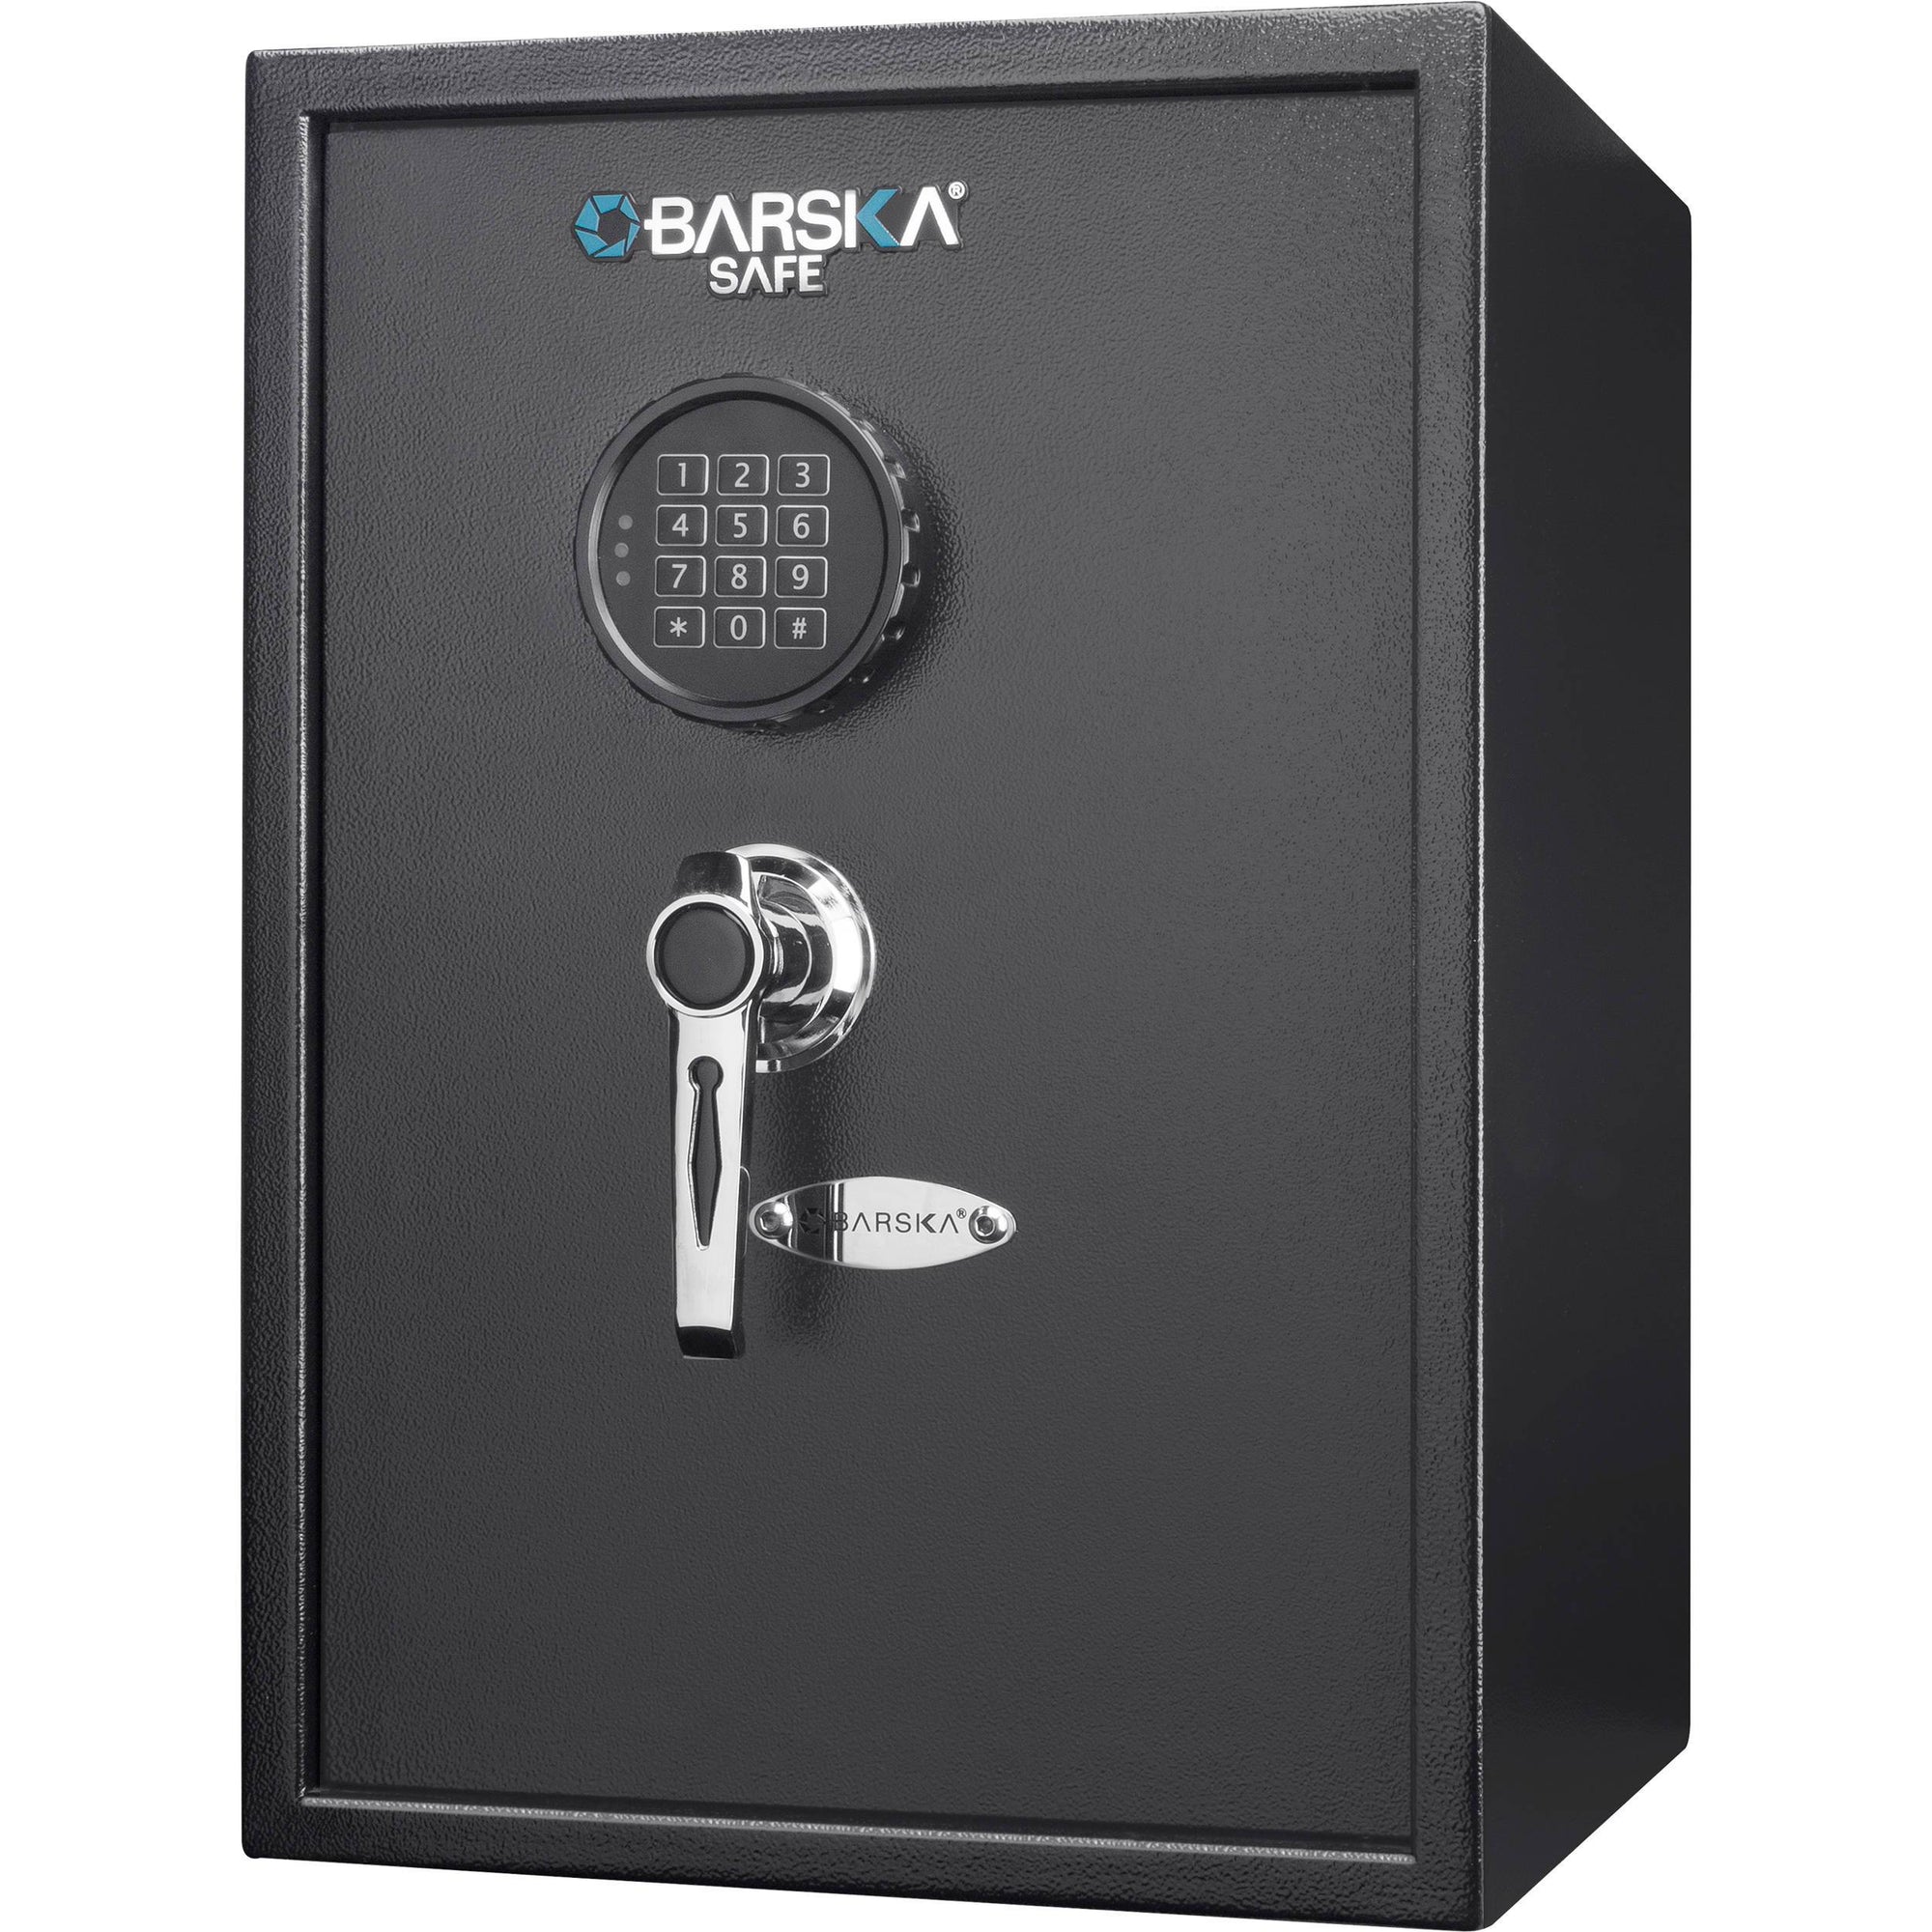 Security Safes - Barska AX13098 1.45 Cubic Ft Large Keypad Security Safe